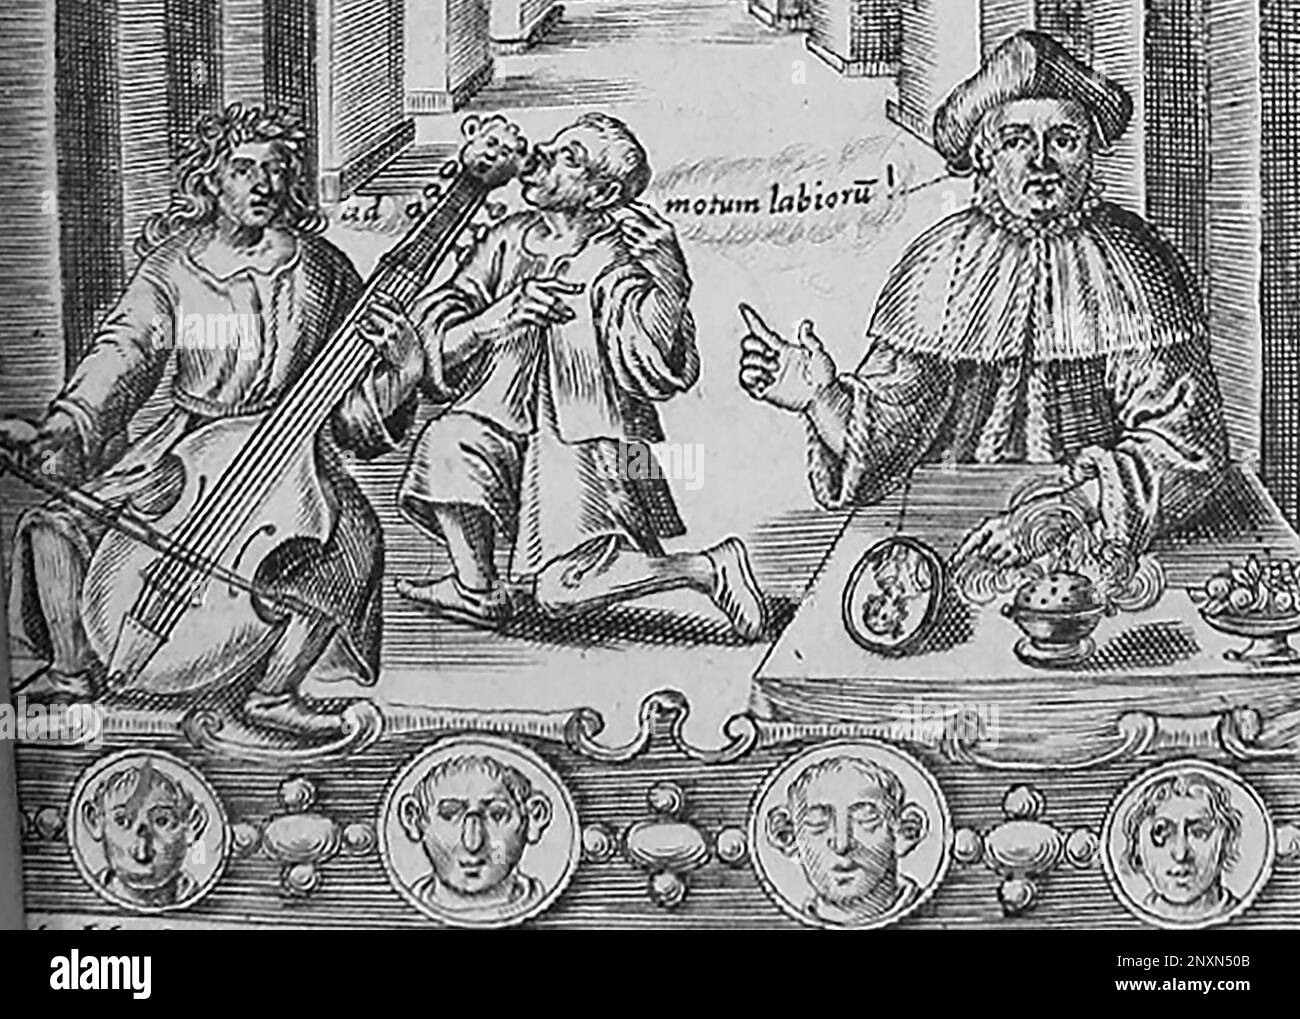 Détail de la frontispice du Philocophus de John Bulwer, publié en 1648, montrant un homme sourd écoutant de la musique par conduction osseuse à travers les dents. John Bulwer (1606-1656) était un médecin et philosophe anglais qui a écrit cinq ouvrages explorant le corps et la communication humaine, dont Chirologia (1644) et Philocophus (1648). Il a été la première personne en Angleterre à proposer l'éducation des personnes sourdes. Les formes de main décrites dans Chirologia sont encore utilisées en langue des signes britannique. Banque D'Images